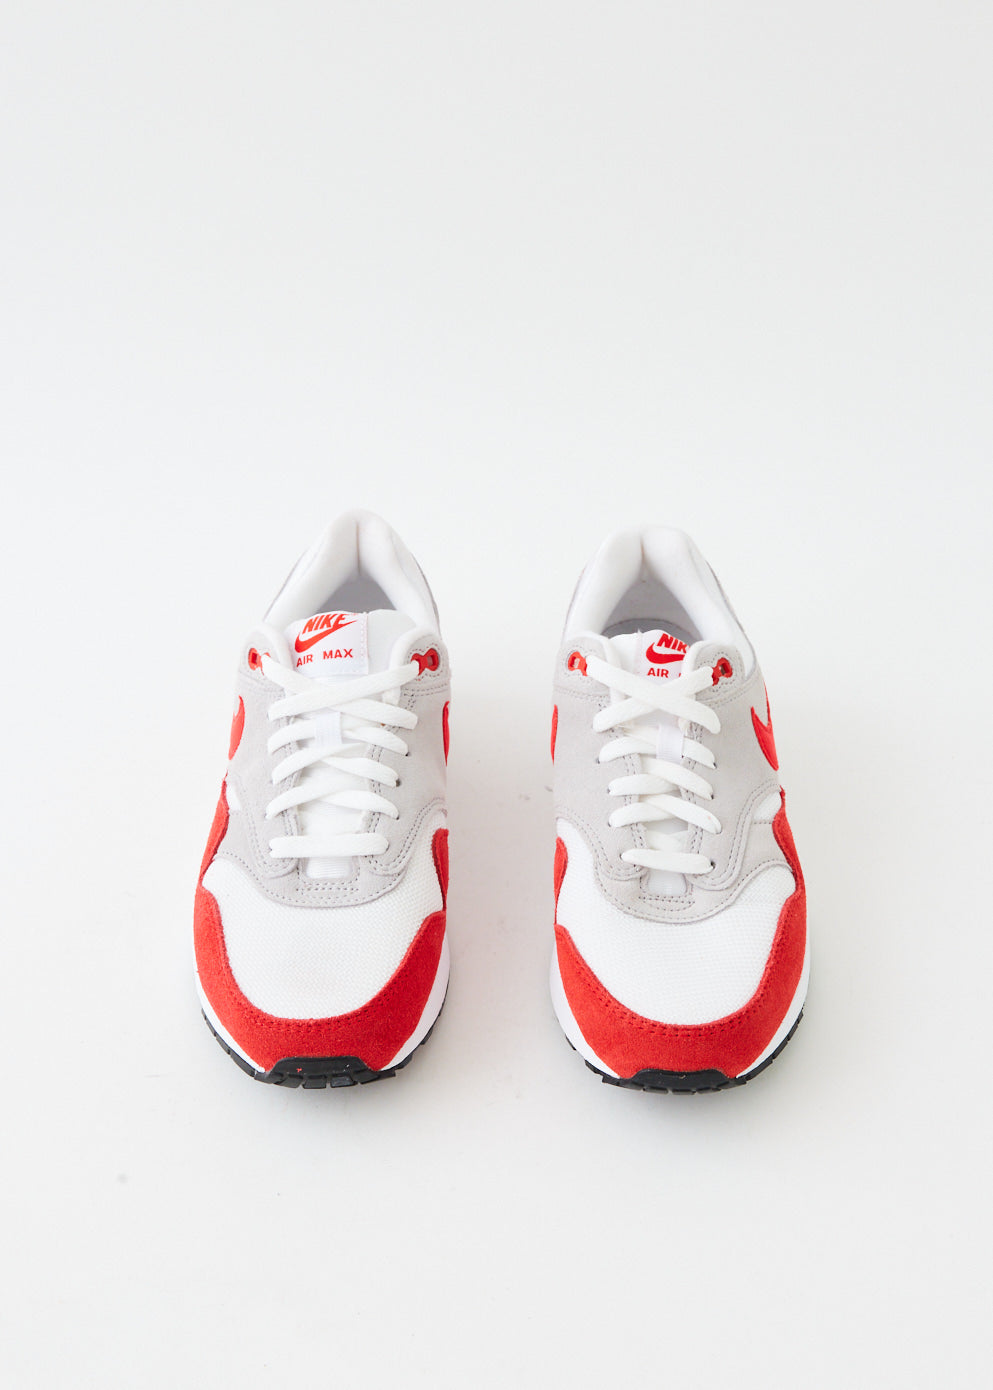 Nike Air Max 1 White University Red (enfant) - 555766-146 – Izicop